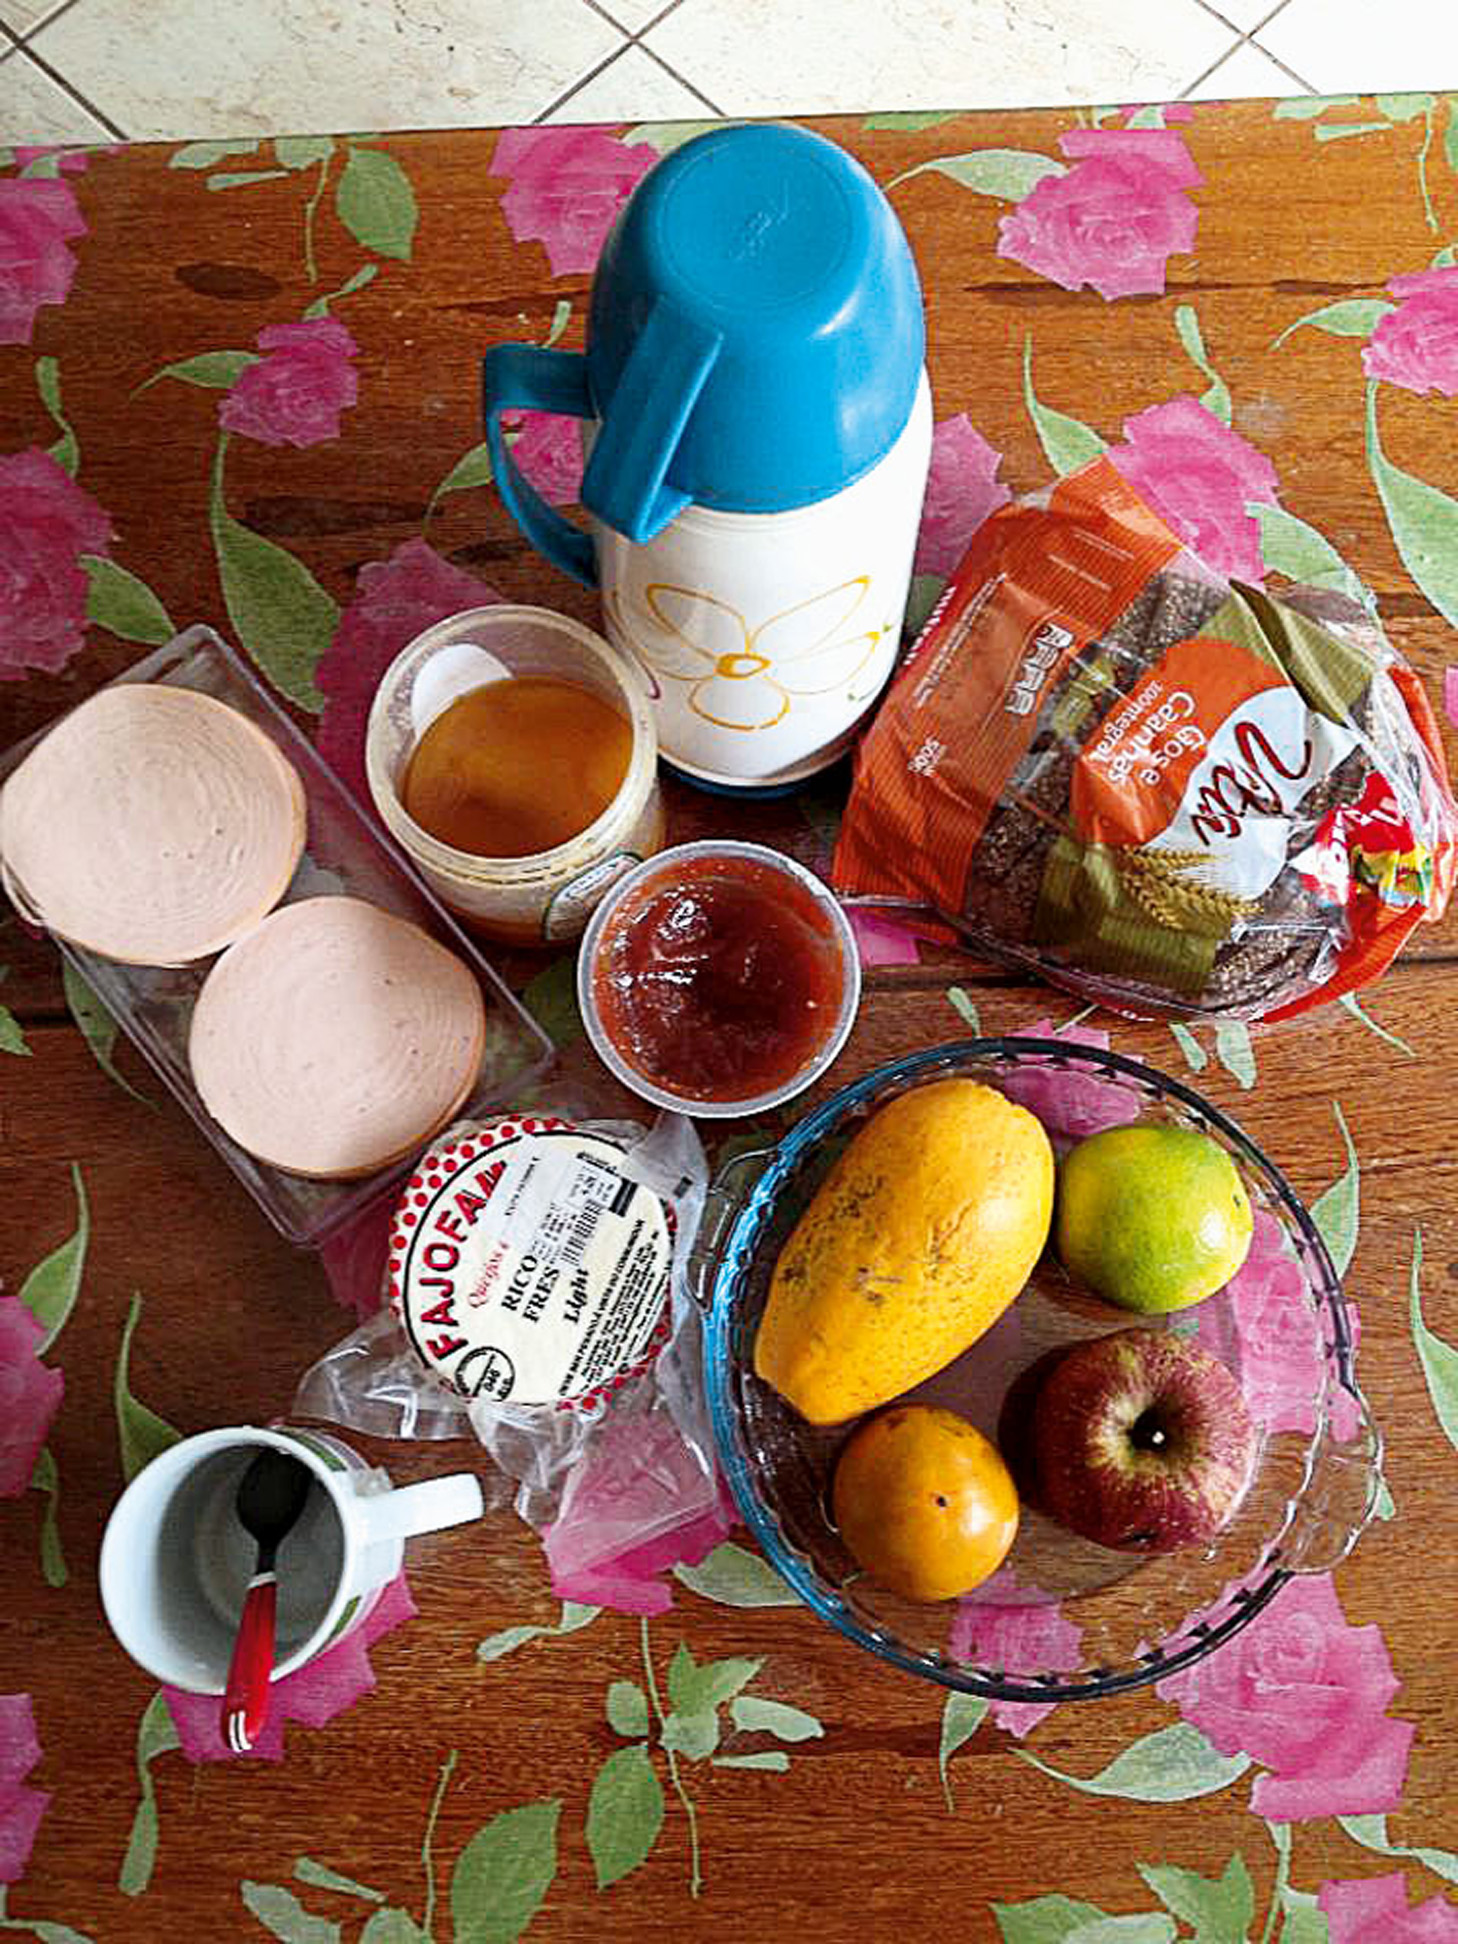 08:30 “No café da manhã: pão integral com queijo branco e geleia, frutas e café. 